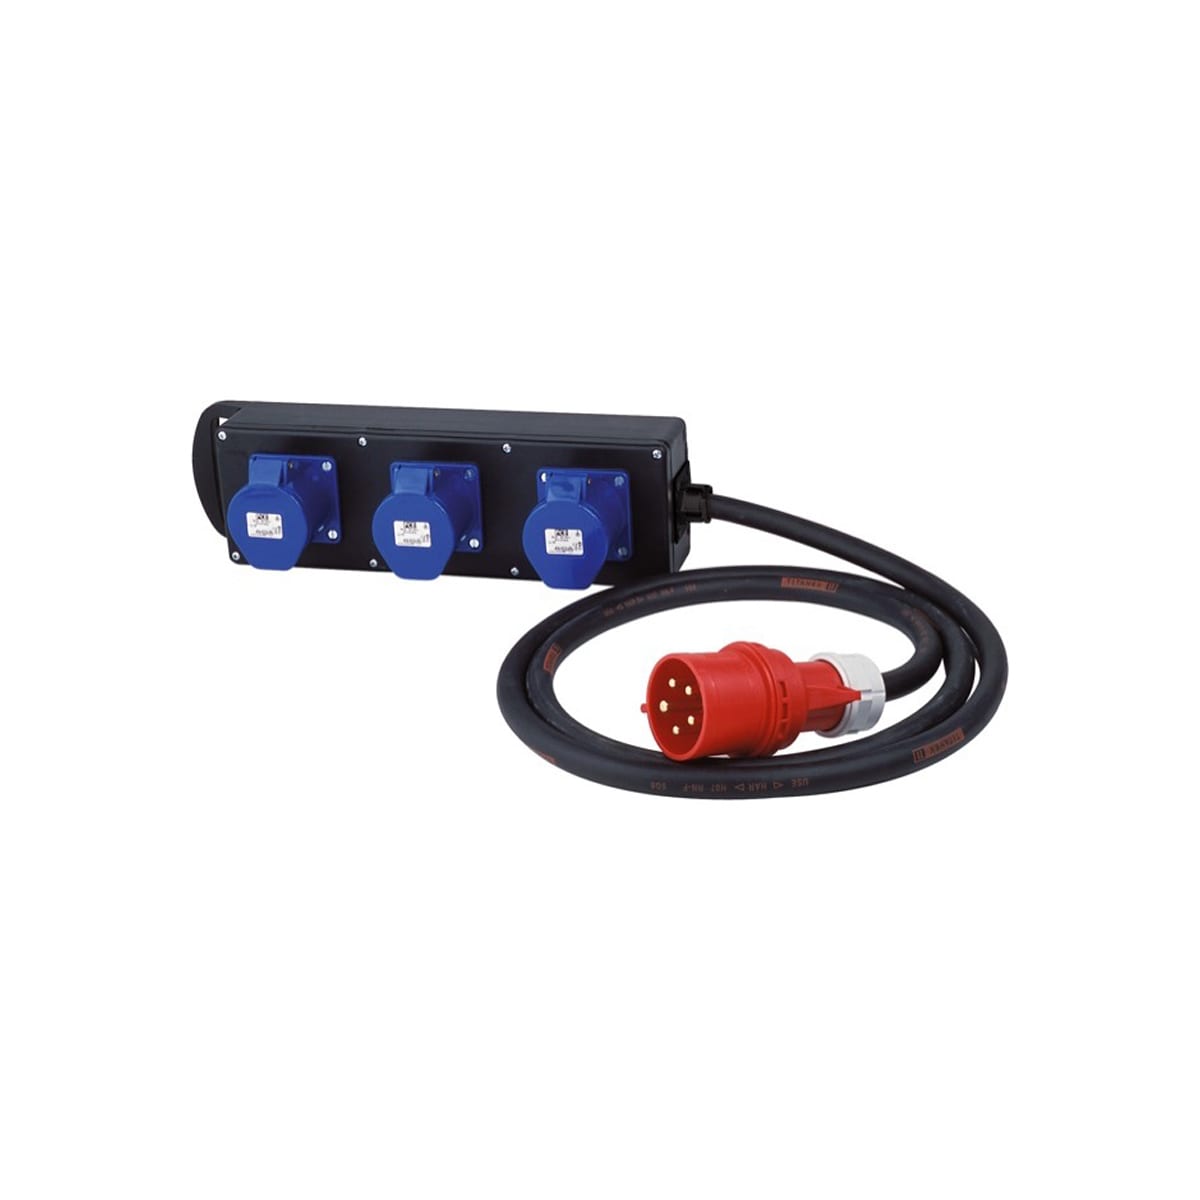  Power Distribution Box, 32A tri (red) - 32A mono (blue)